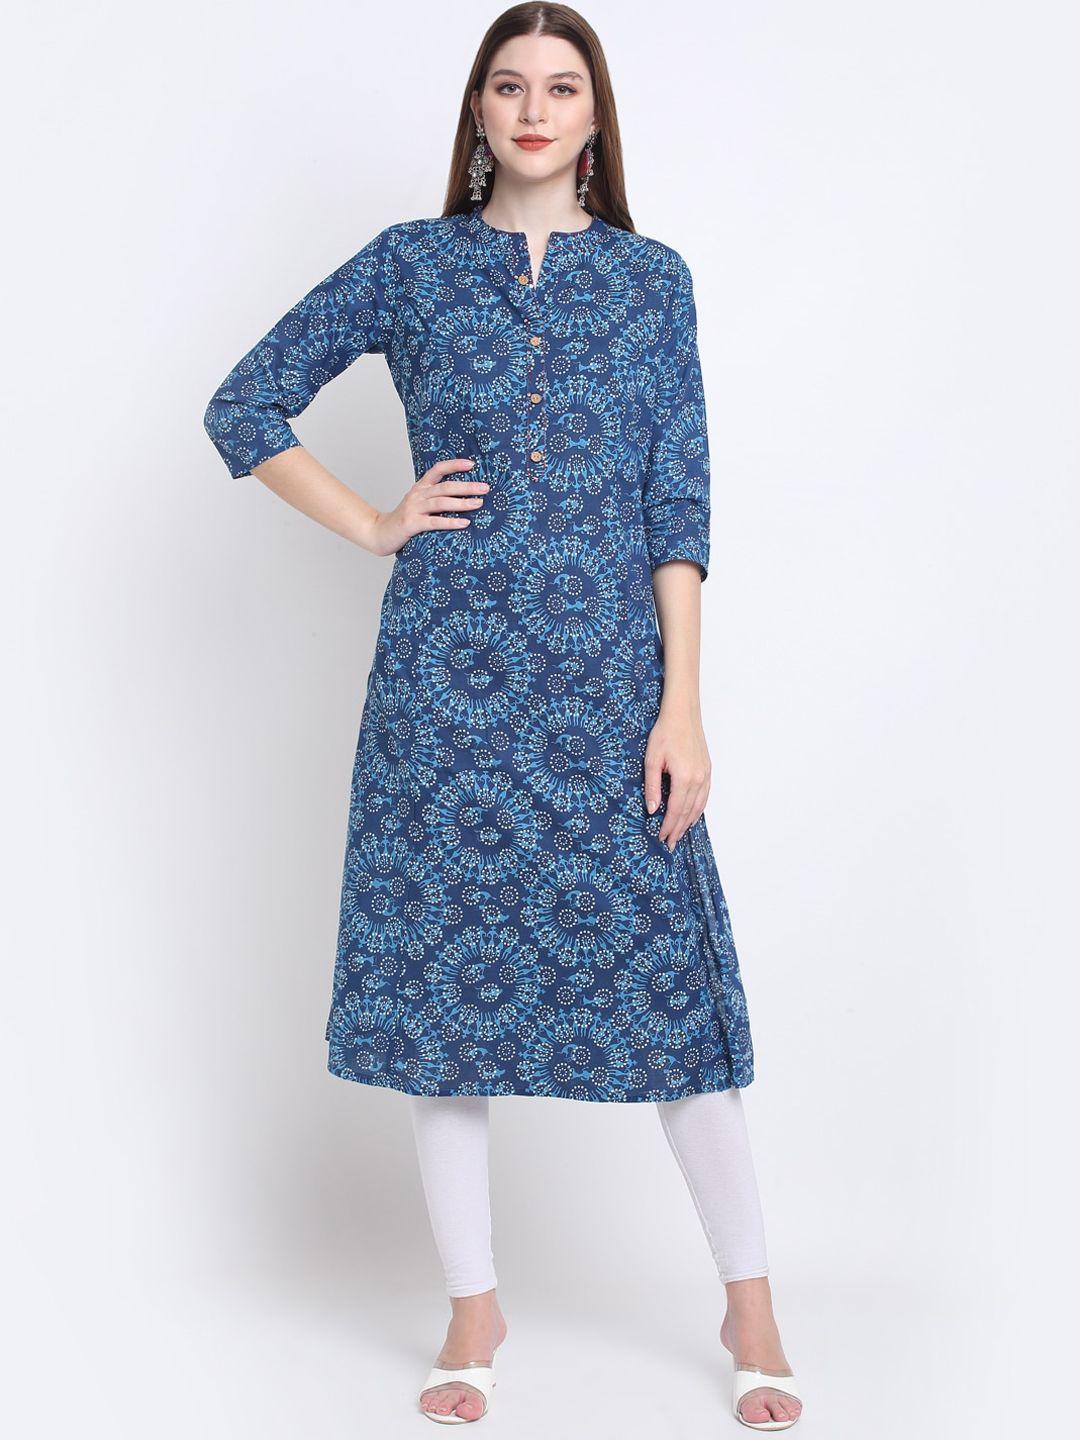 kalini navy blue & white cotton printed kurta